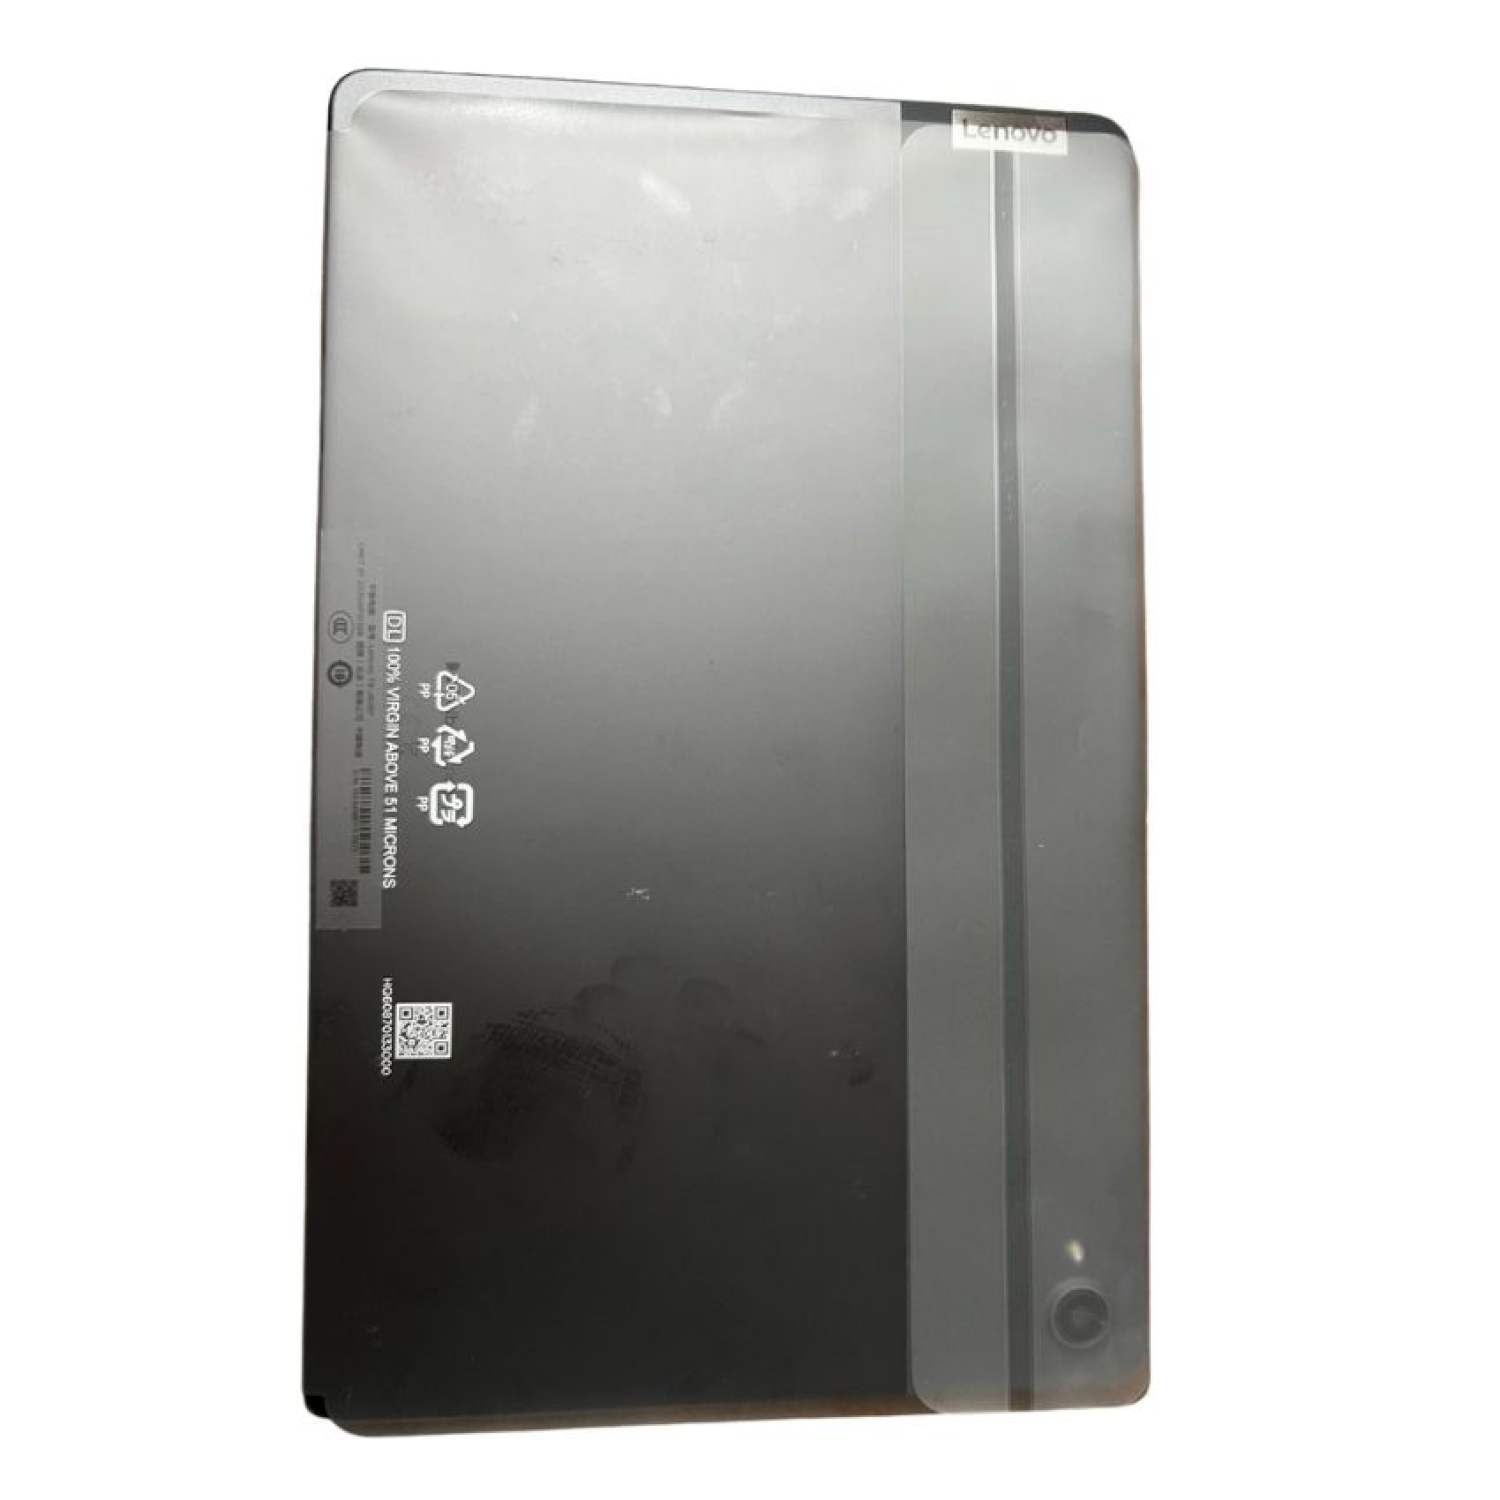 Máy Tính Bảng Lenovo Xiaoxin Pad P11, Xiaoxin Pad P11 (J606F)/ P11 plus Mới 100% fullbox Bộ nhớ 4gb/64GB, 6gb/...